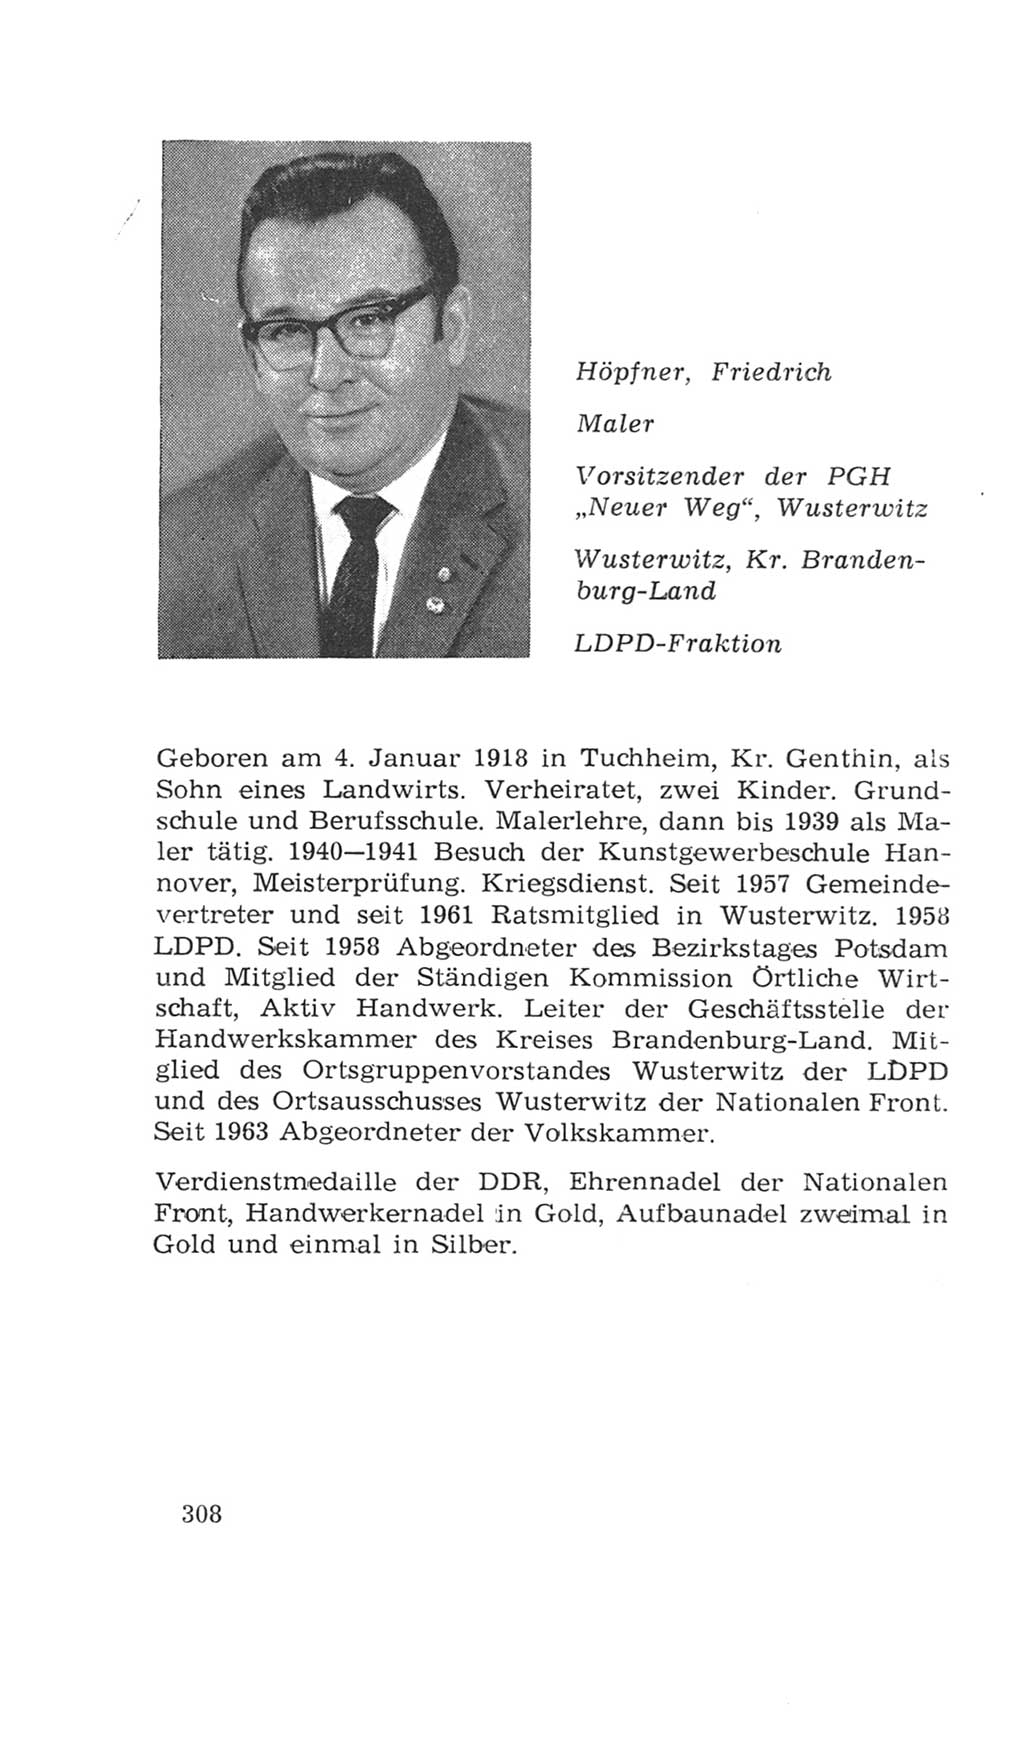 Volkskammer (VK) der Deutschen Demokratischen Republik (DDR), 4. Wahlperiode 1963-1967, Seite 308 (VK. DDR 4. WP. 1963-1967, S. 308)